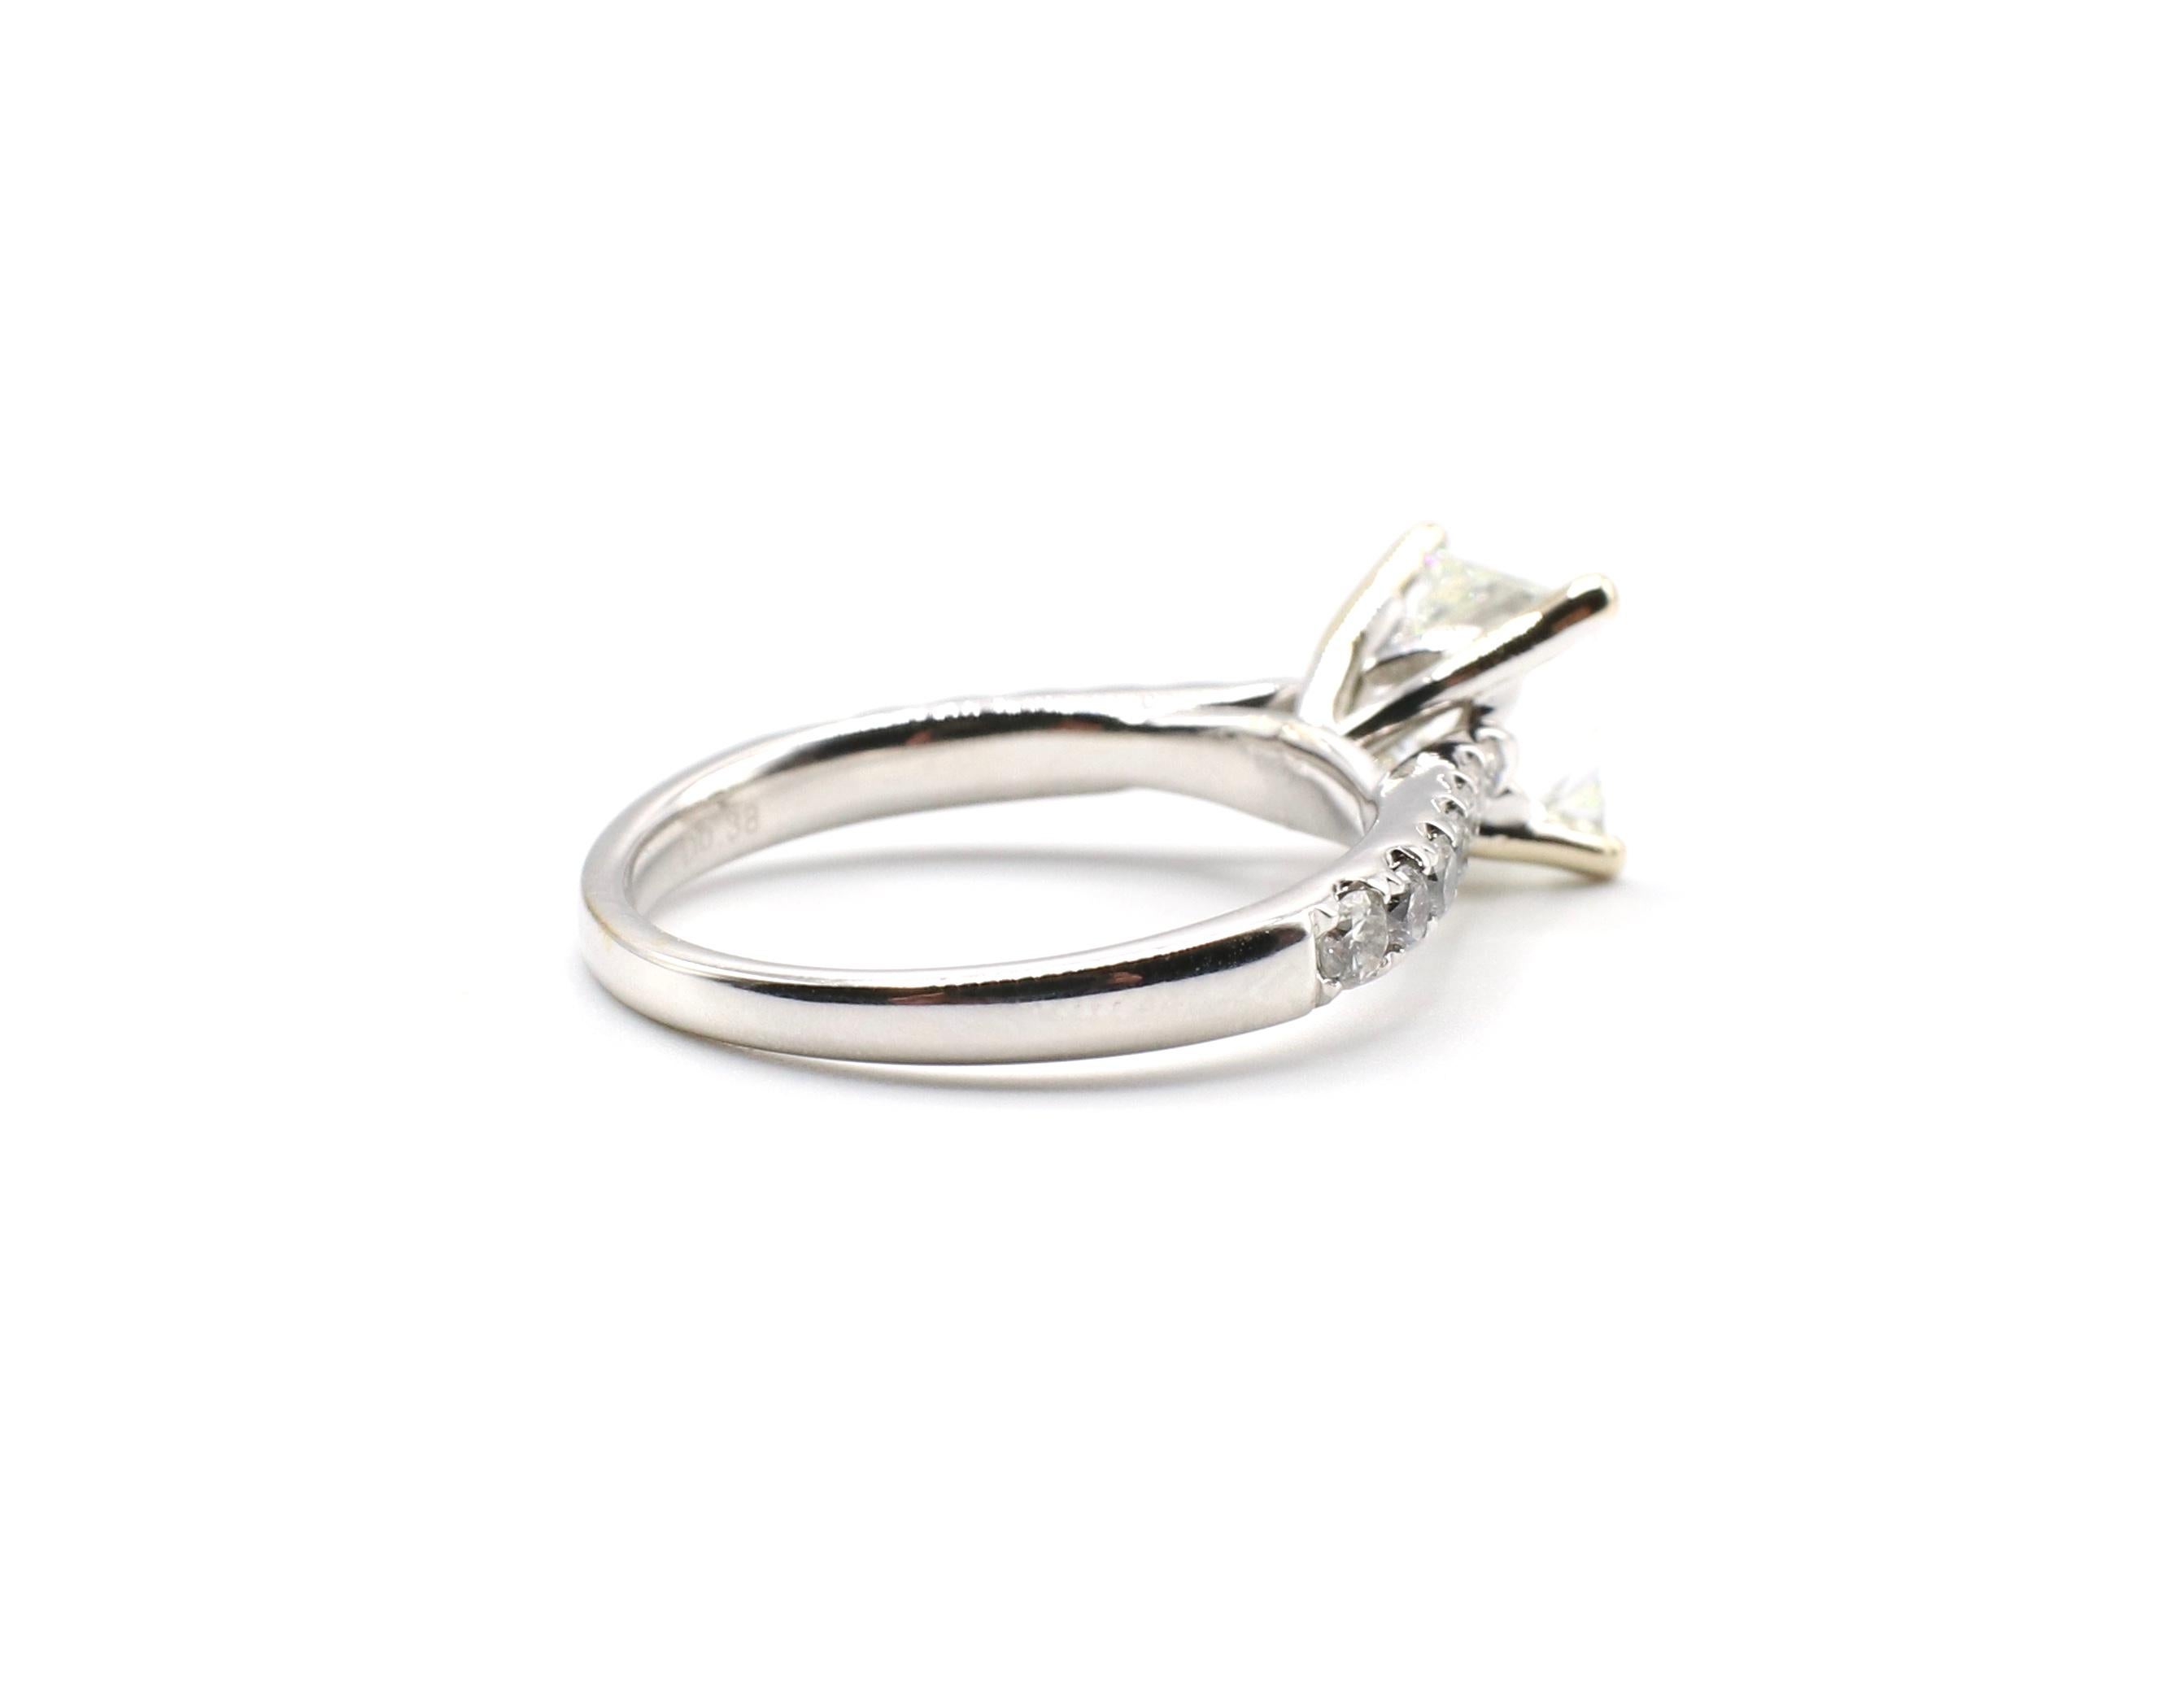 IGI Certified 1.48 Carat I VS1 Princess Cut 18 Karat White Gold Diamond Ring 1